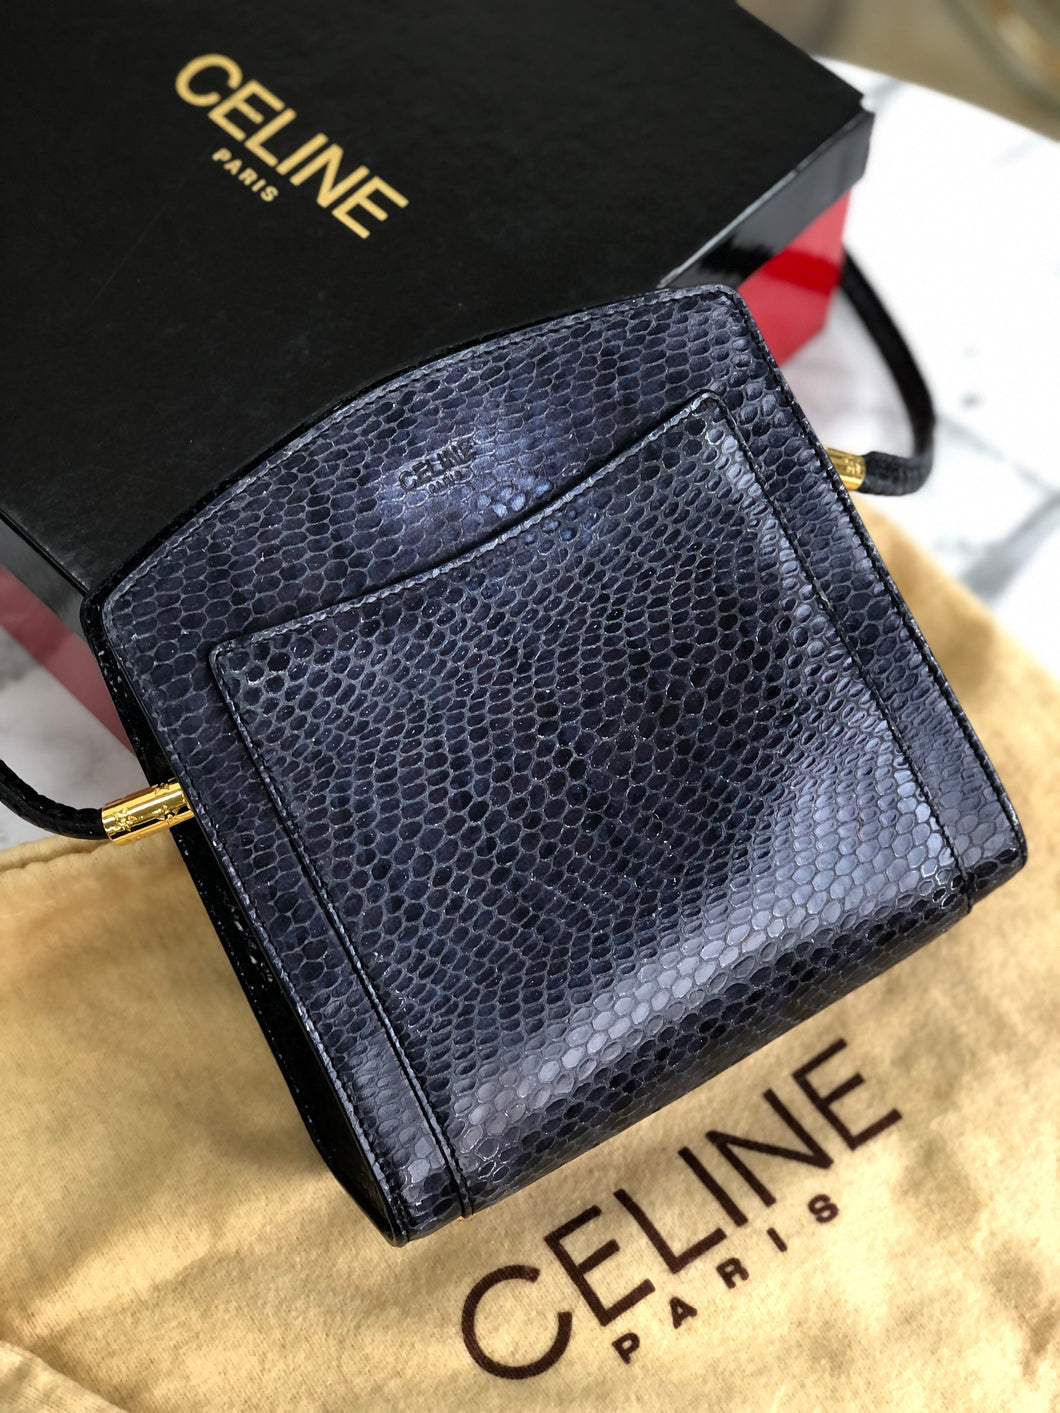 CELINE Star Python Leather Shoulder bag Black Vintage Old CELINE pi7dwg